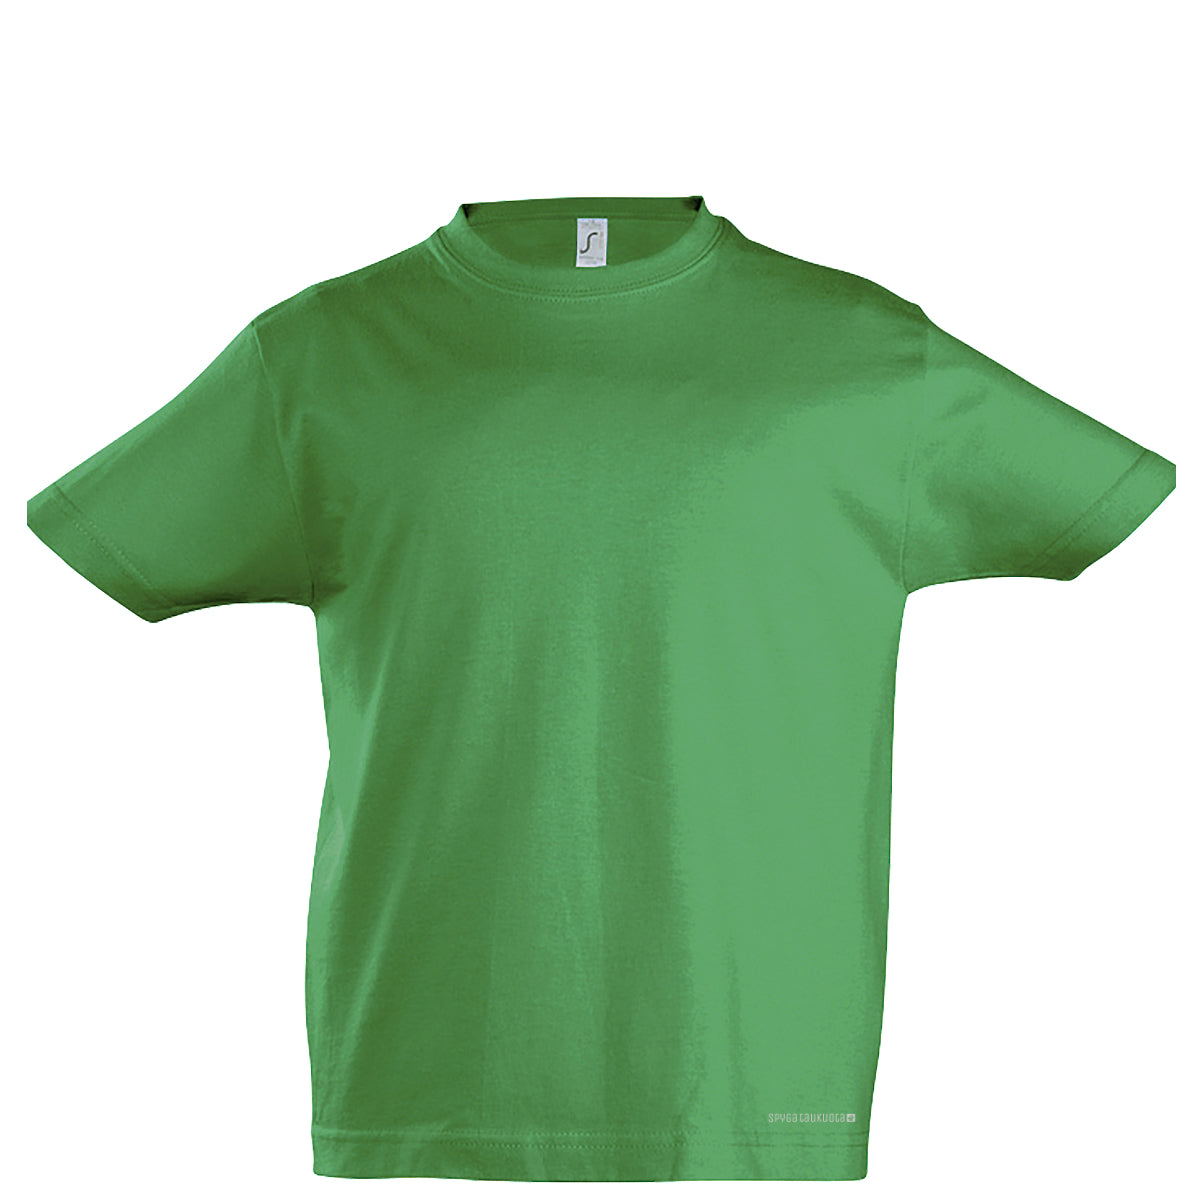 Žali vaikiški marškinėliai be spaudos